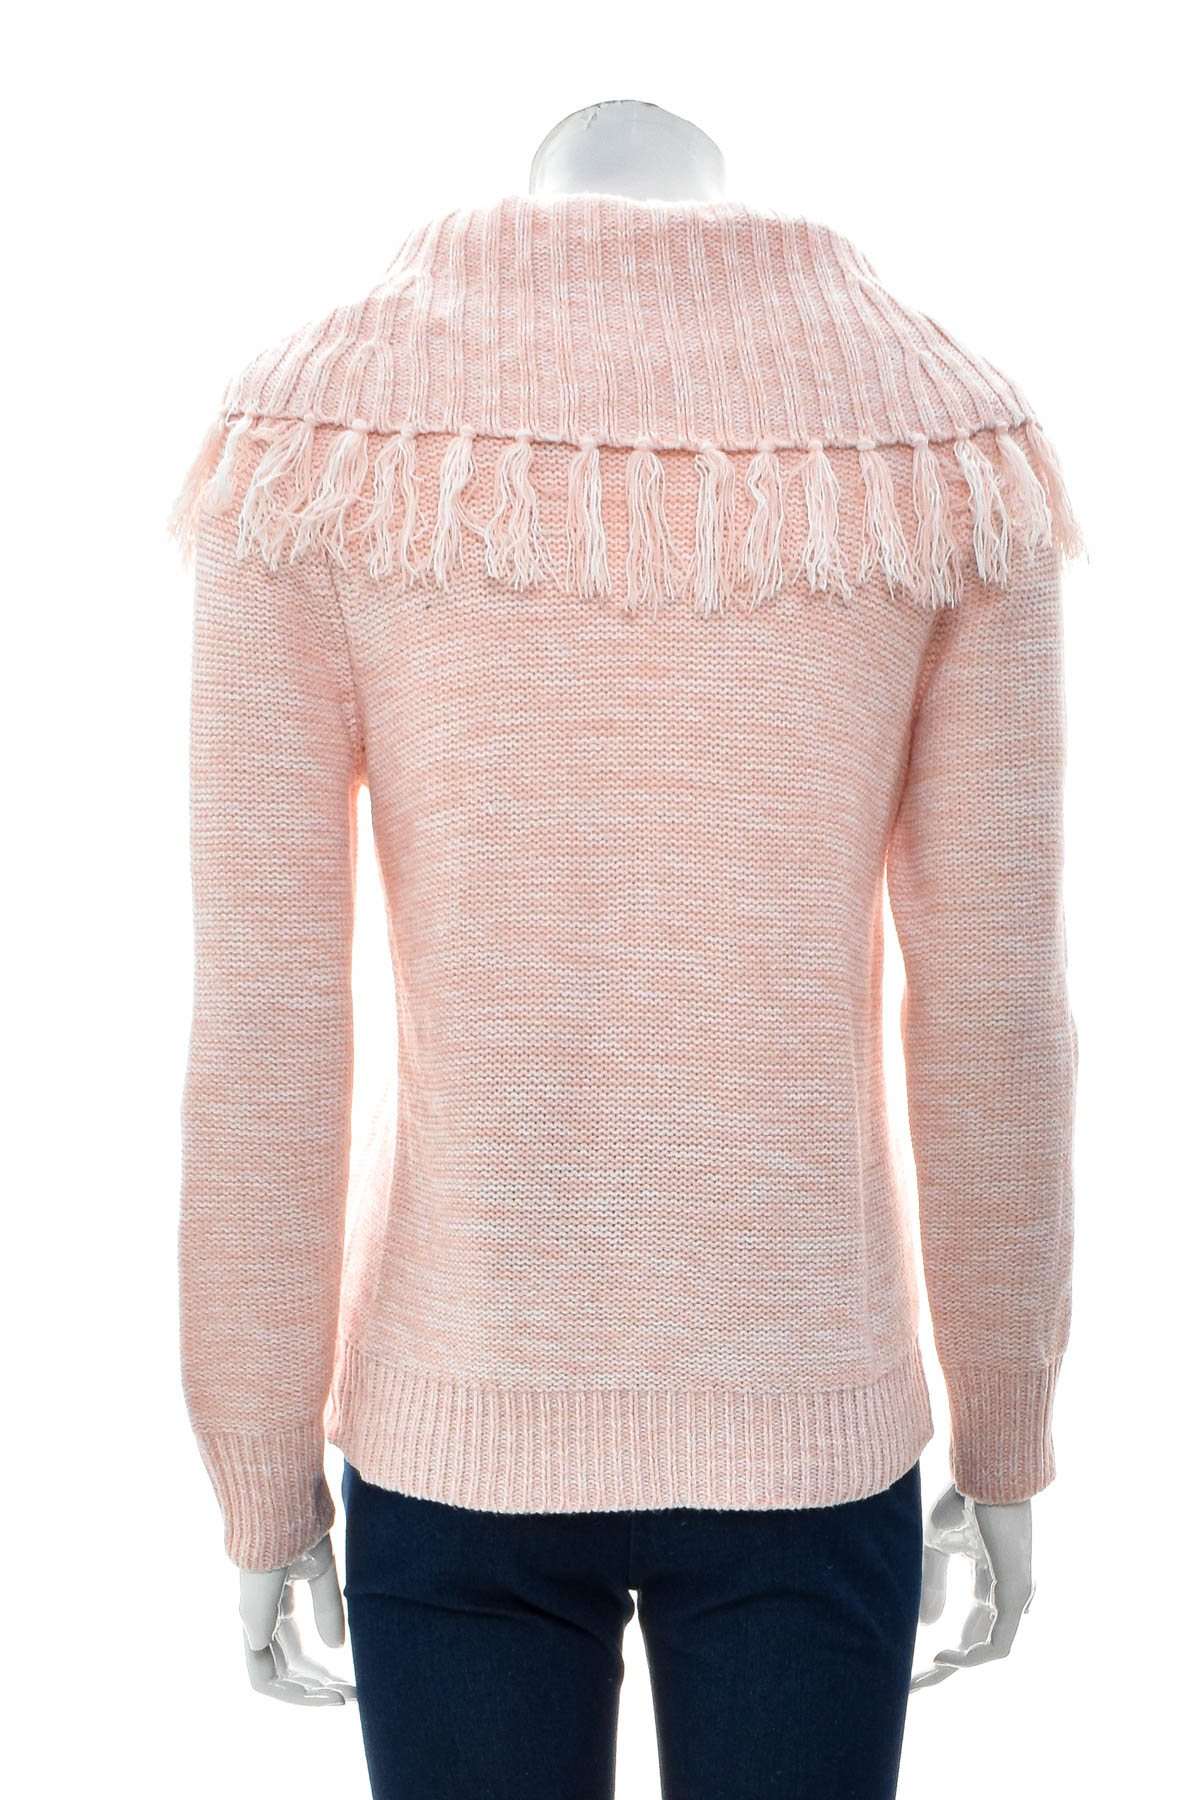 Women's sweater - Ruby Rd. petite - 1